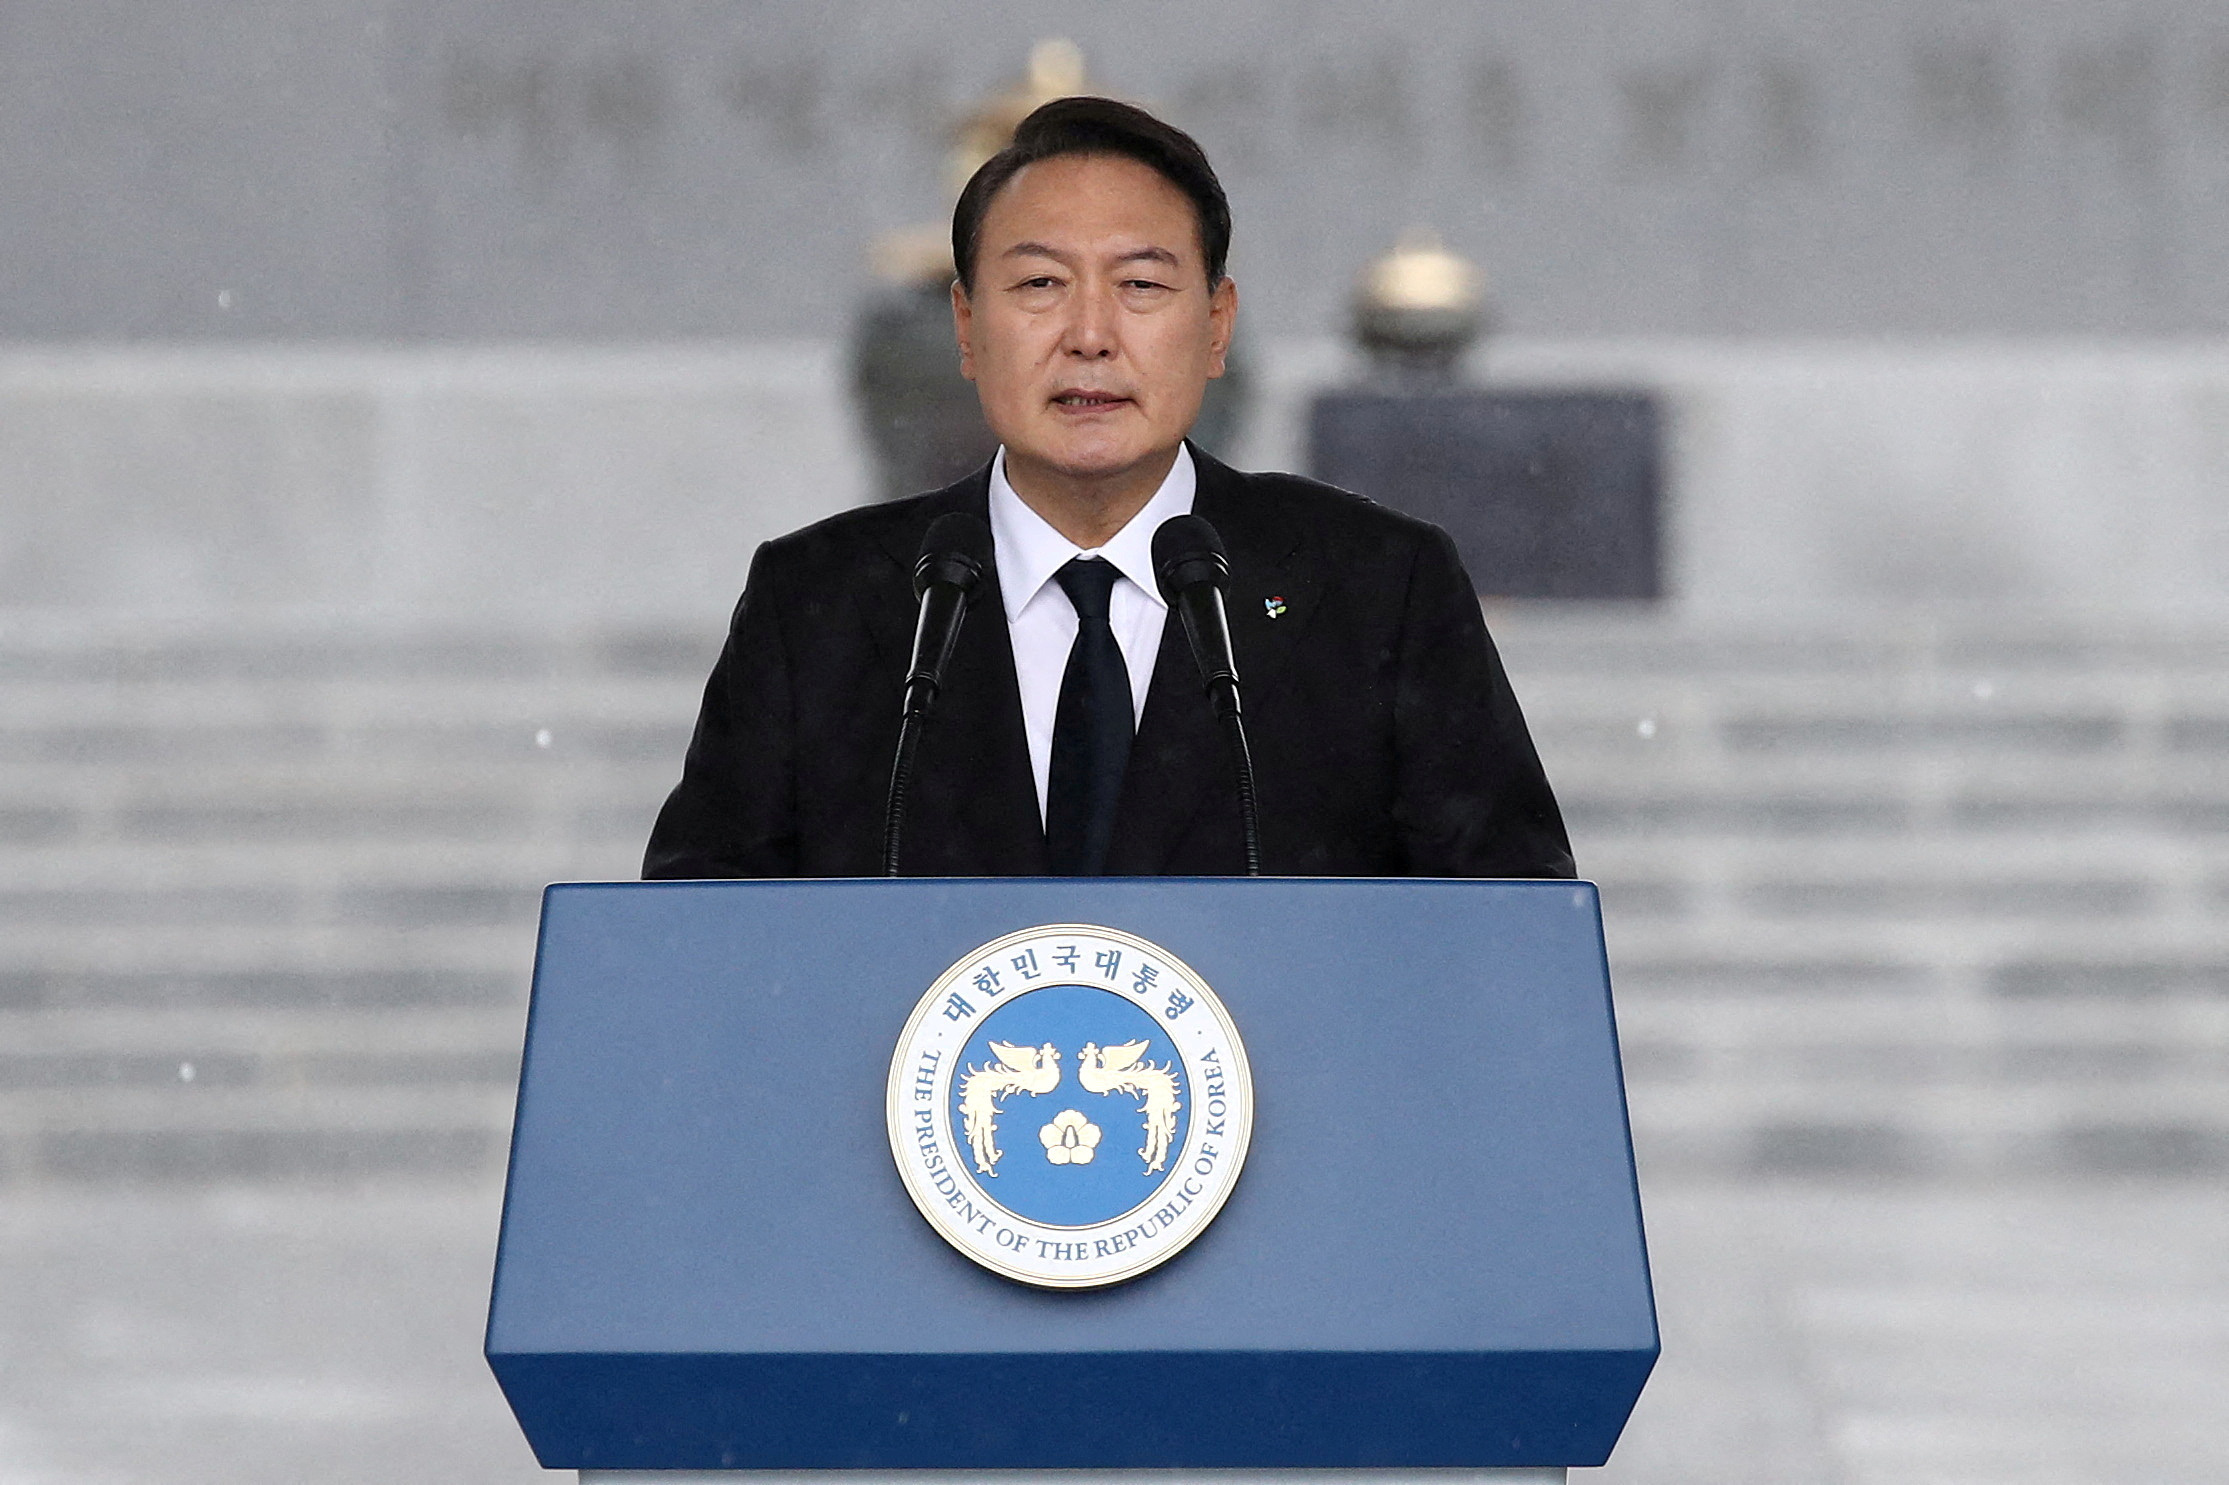 El presidente de Corea del Sur, Yoon Suk Yeol